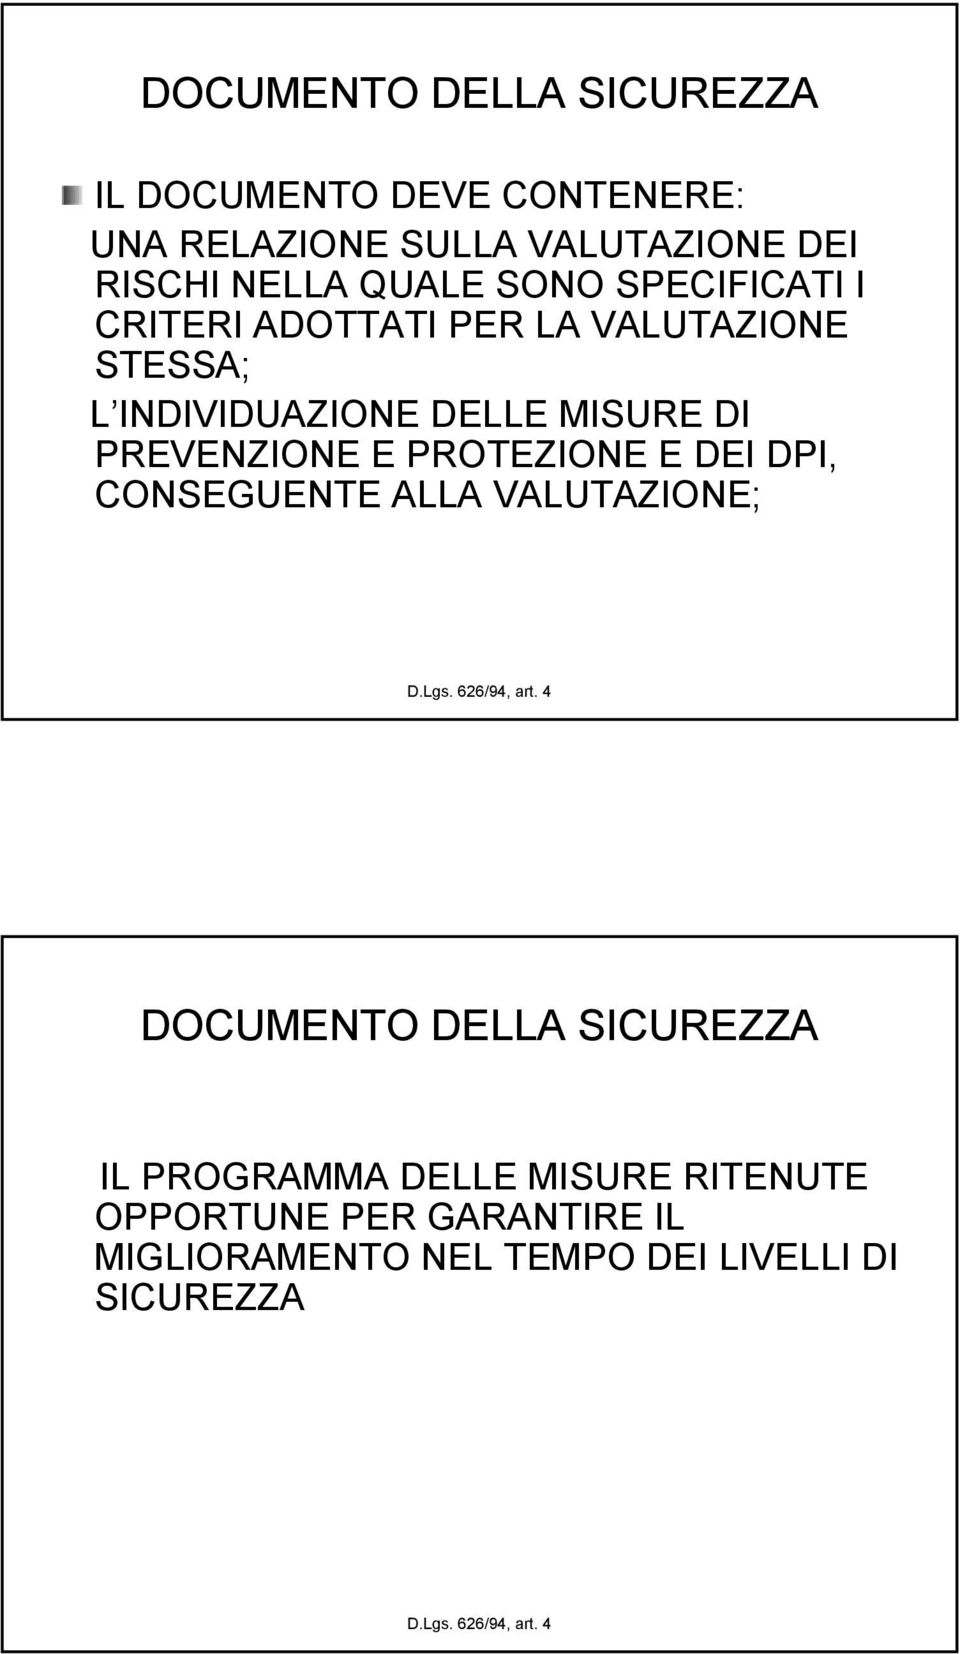 PROTEZIONE E DEI DPI, CONSEGUENTE ALLA VALUTAZIONE; D.Lgs. 626/94, art.